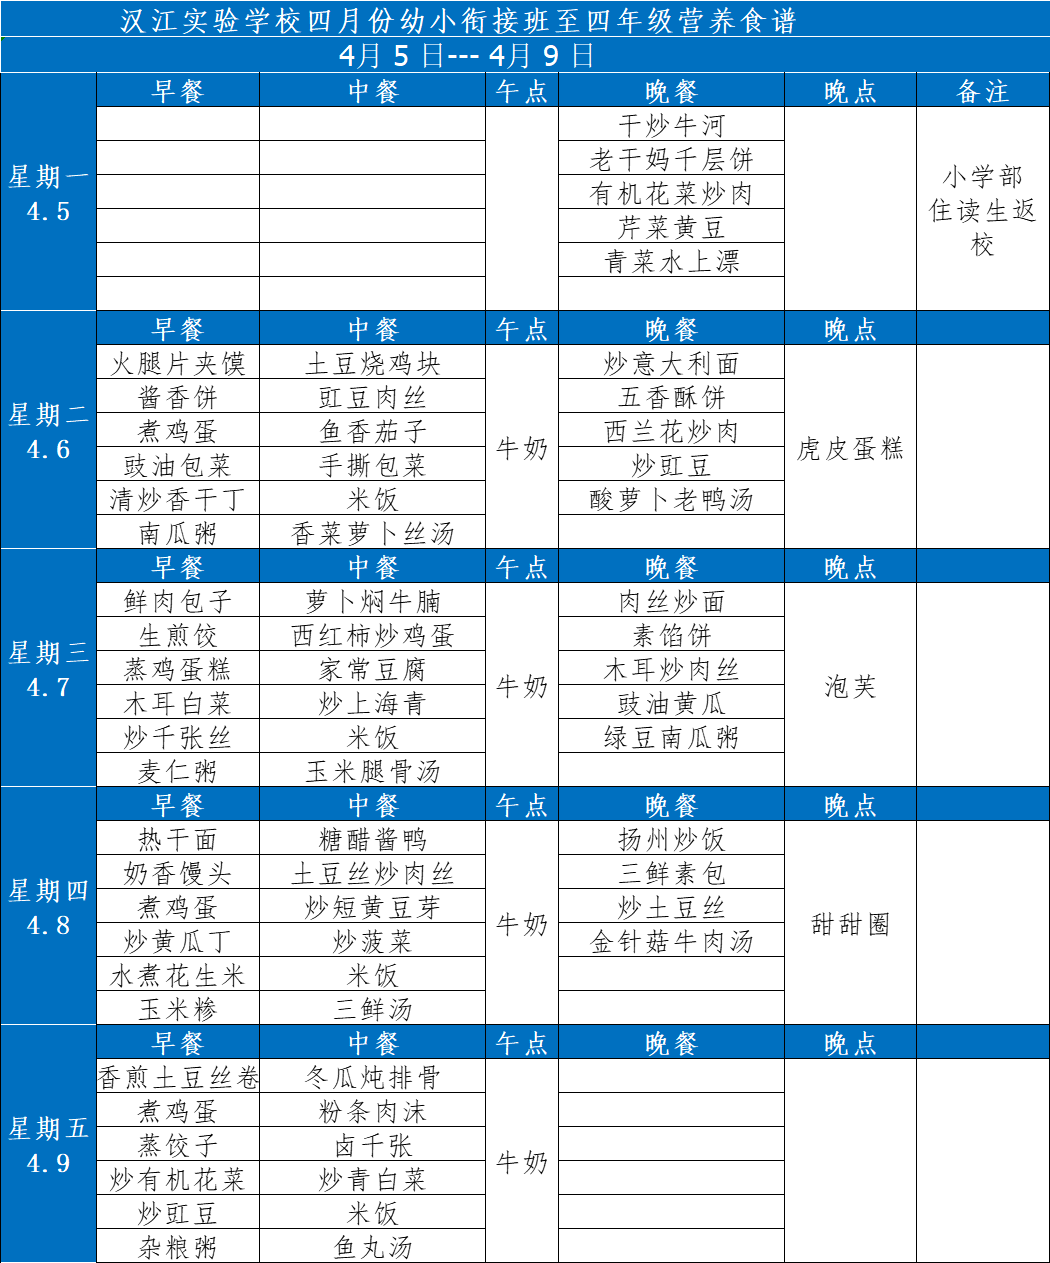 汉江实验学校2021年4月5日-2021年4月10日学生食谱公示